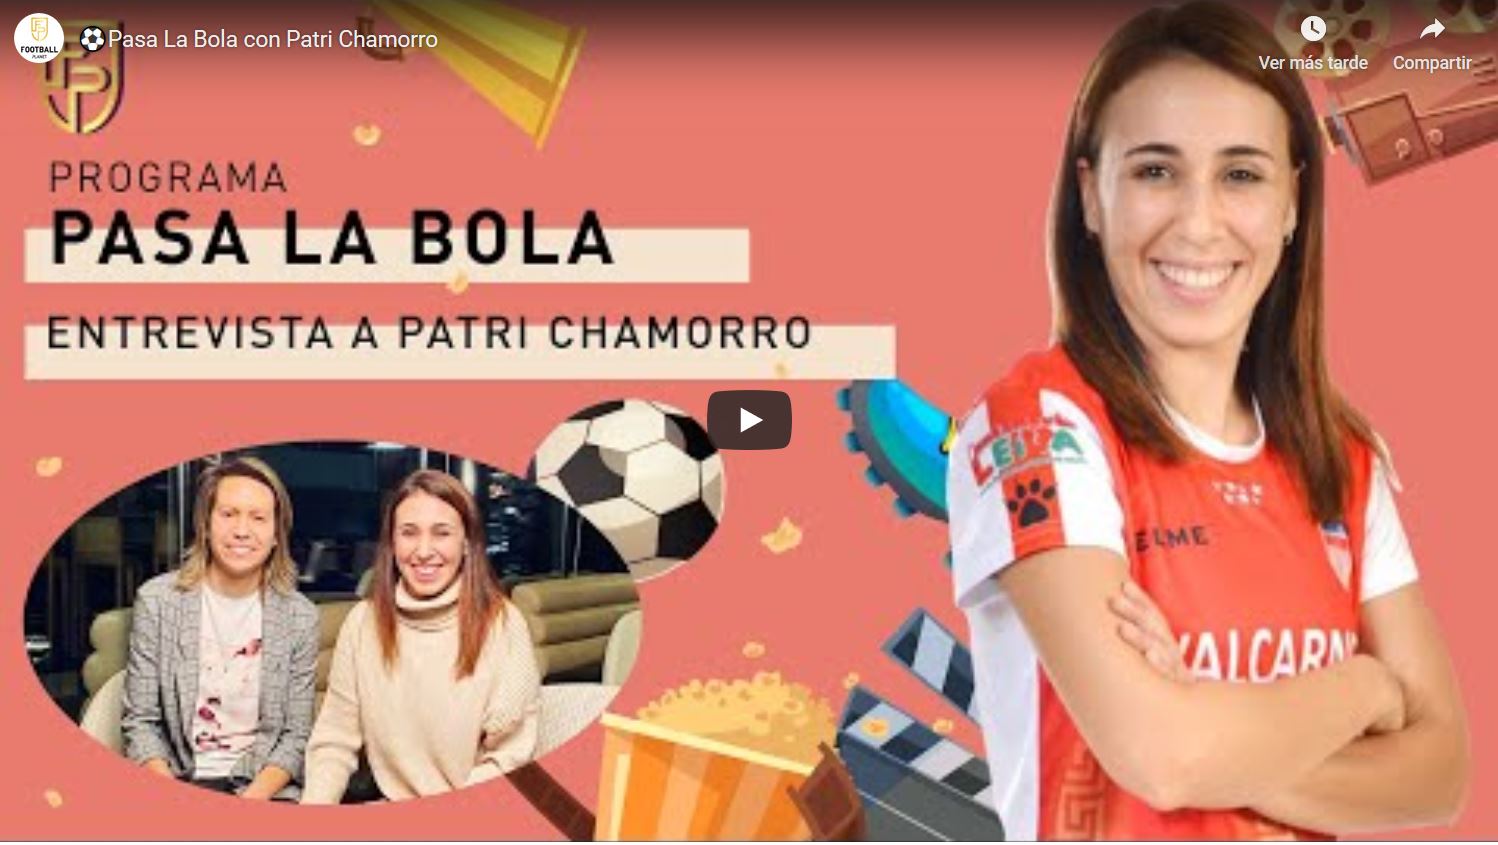 Entrevista a Patri Chamorro en el espacio "Pasa la Bola" del Canal Football Planet